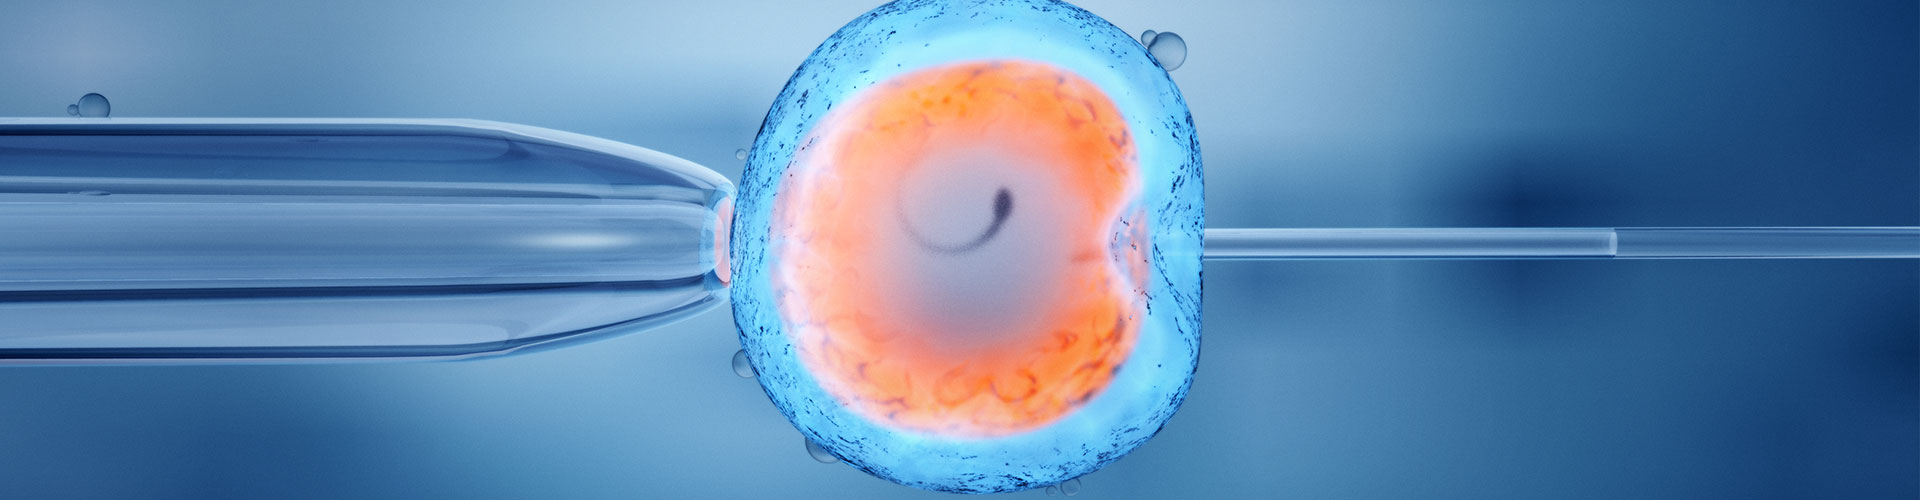 In Vitro Fertilization & Embryo Transfer in New Jersey | Infertility Docs